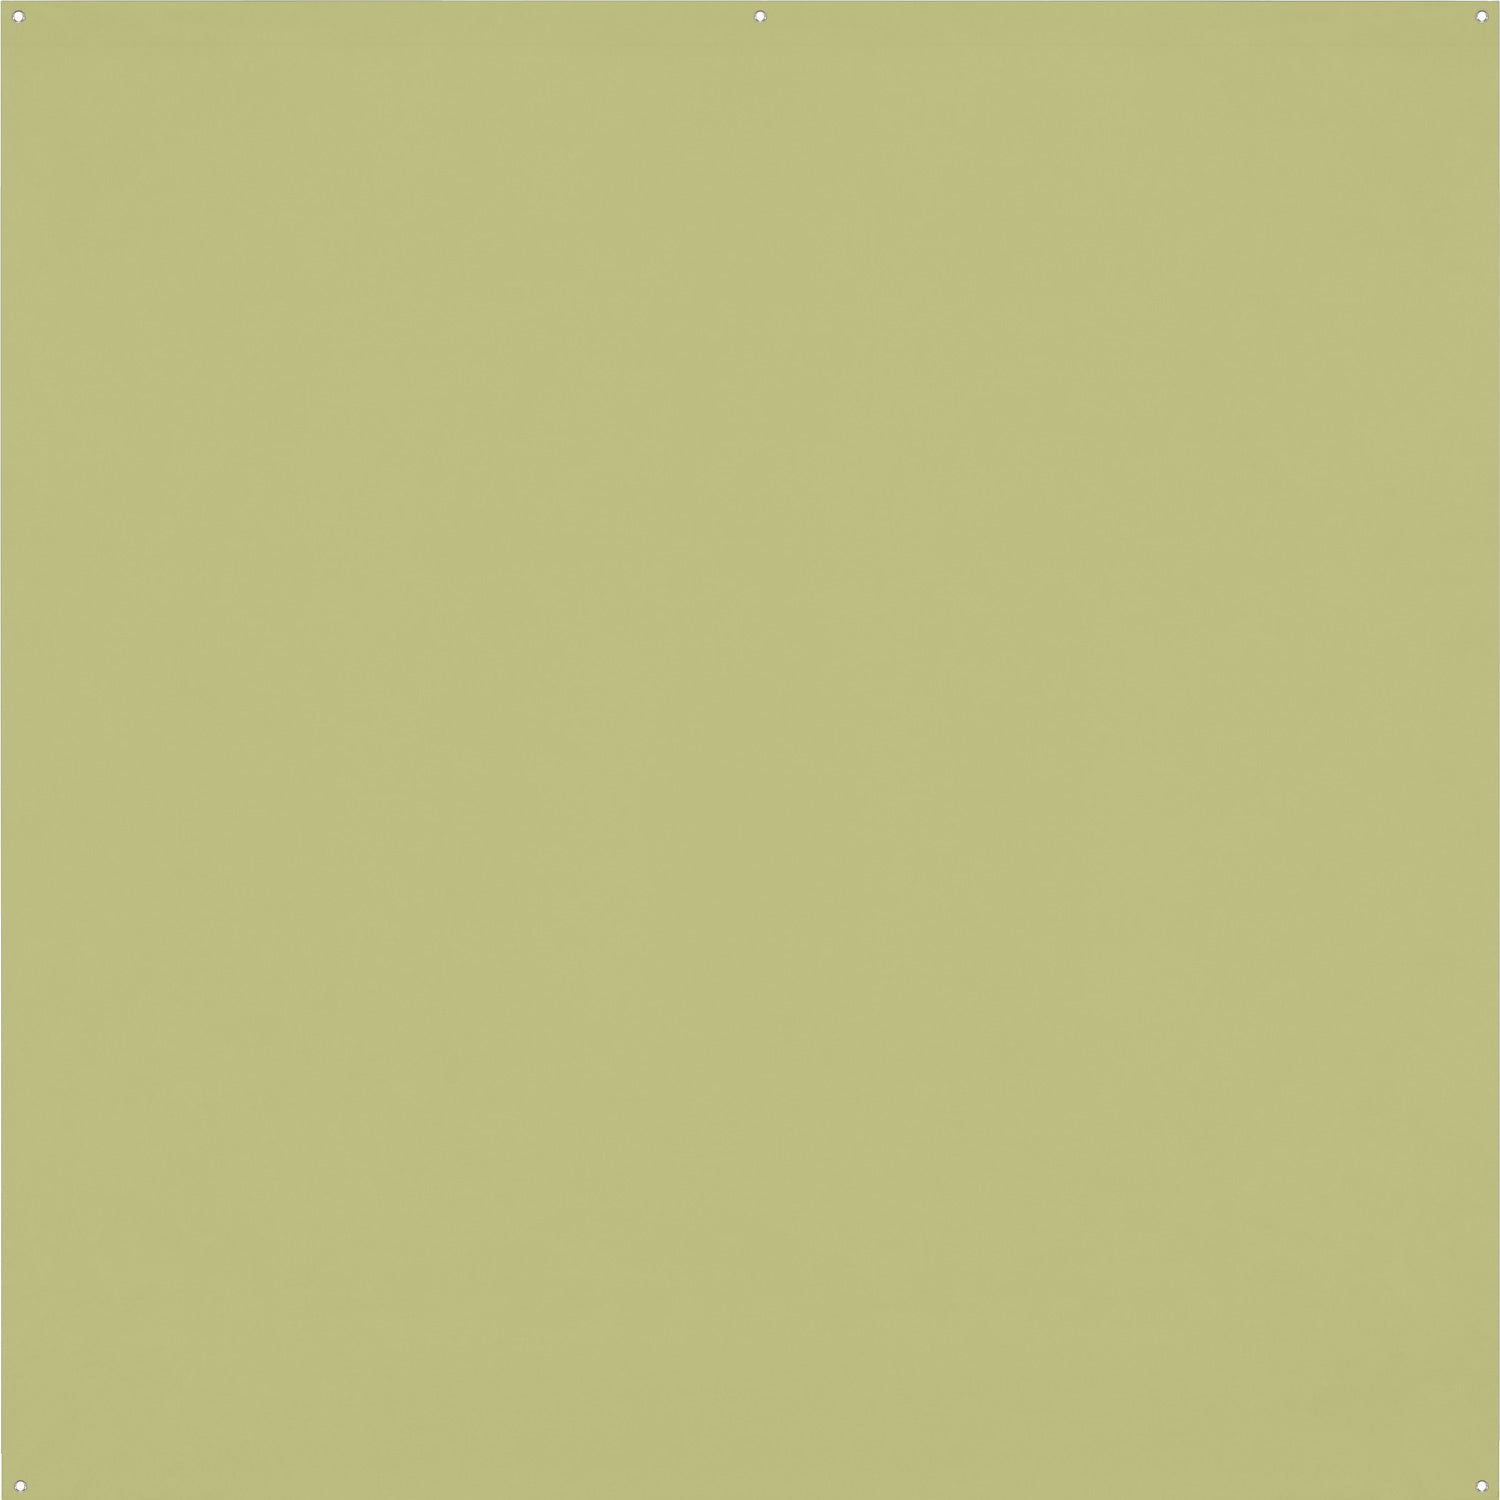 X-Drop Pro Wrinkle-Resistant Backdrop - Light Moss Green (8' x 8')